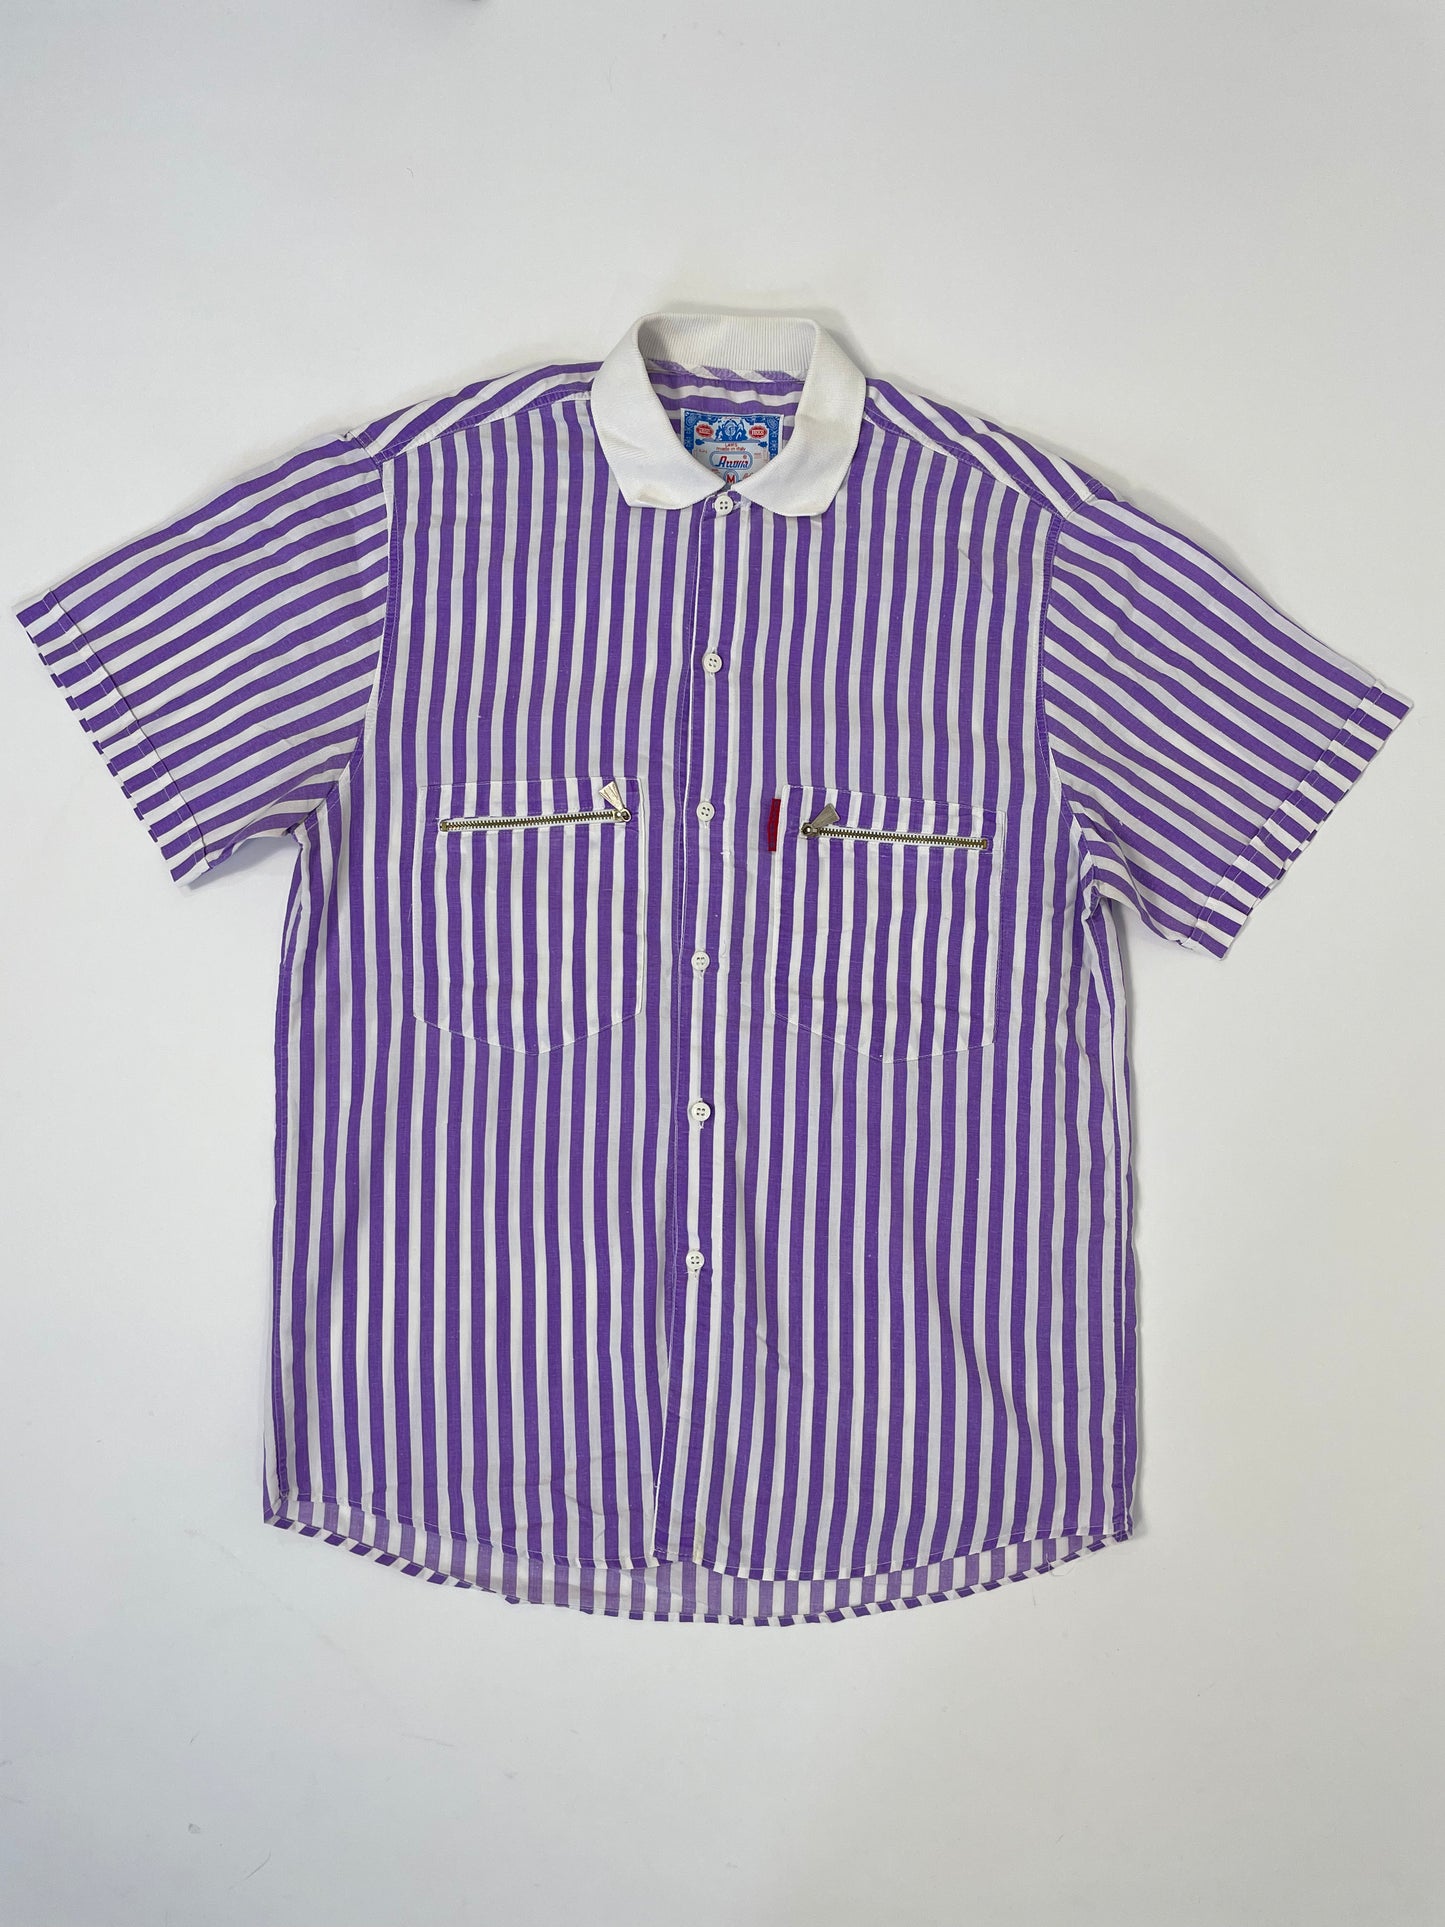 camicia-manica-corta-a-righe-viola-e-bianco-anni-80